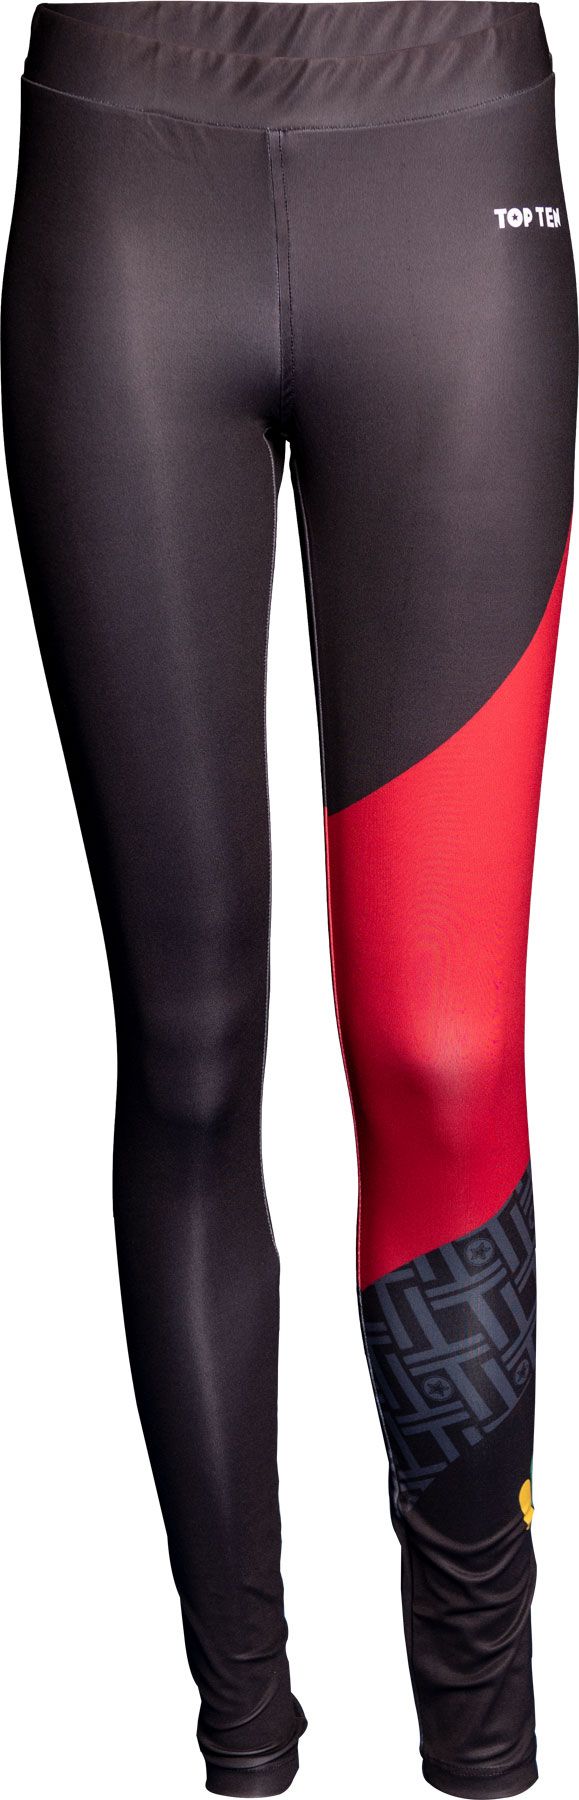 Top Ten Workout Leggings - black/red